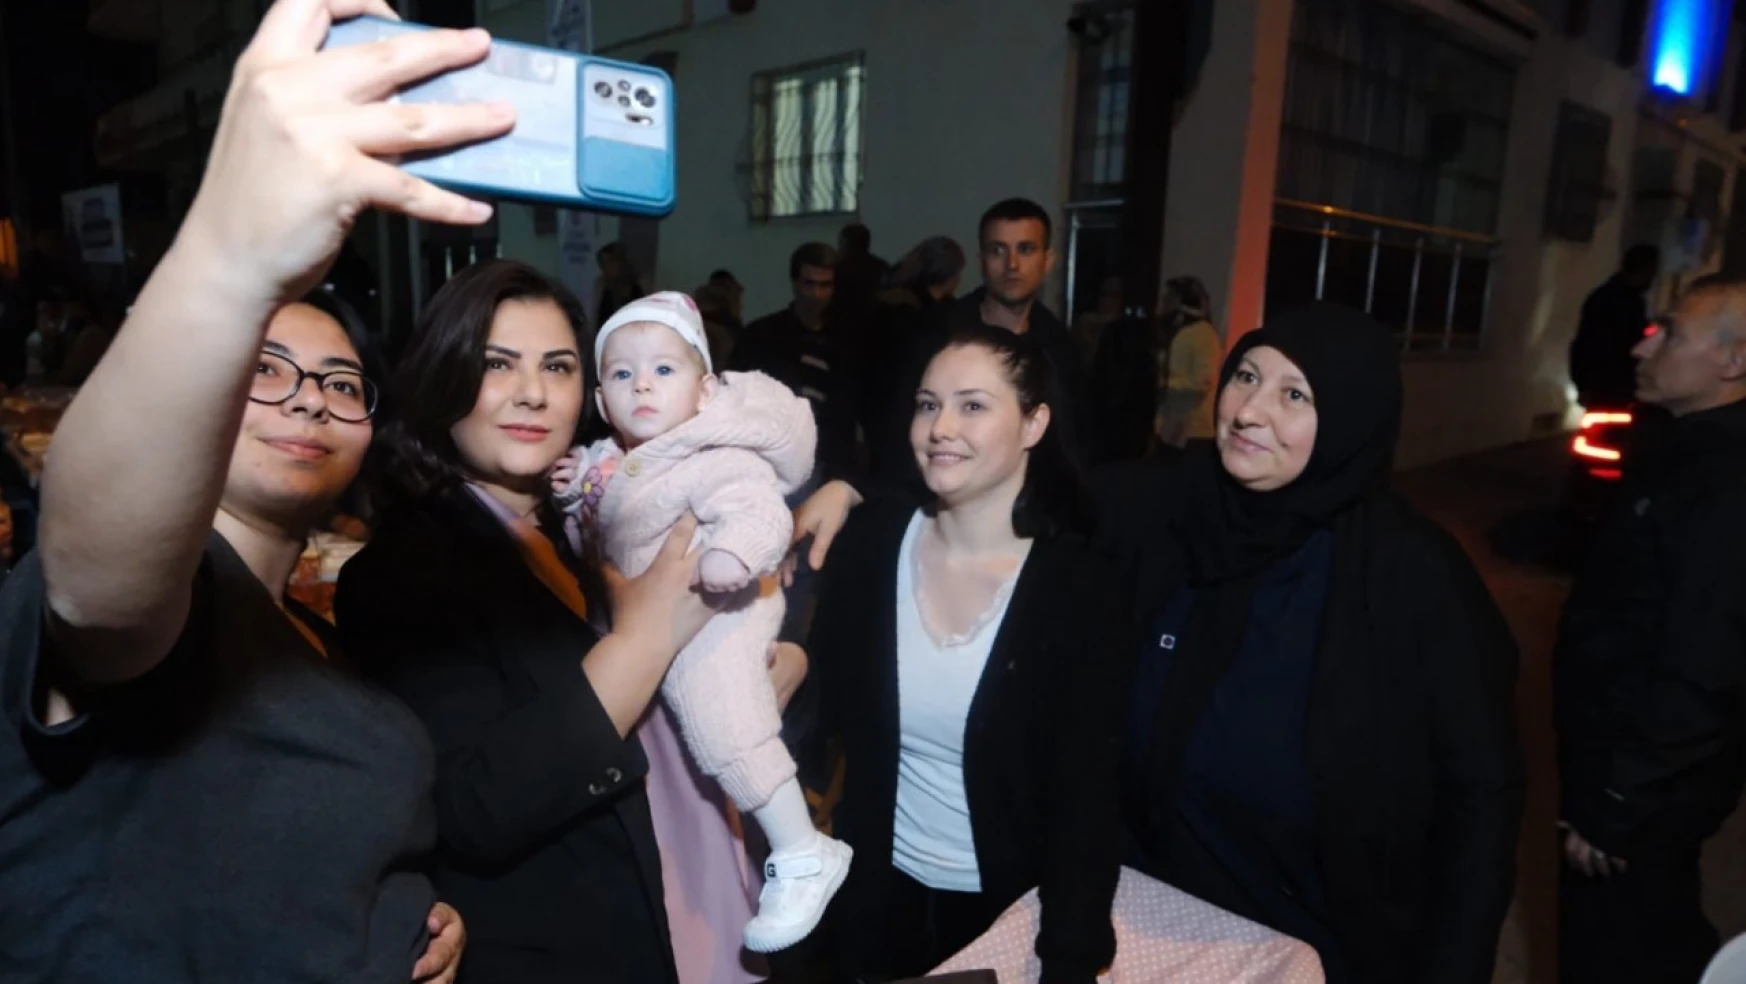 Başkan Çerçioğlu, Kemer Mahallesi'nde vatandaşlarla buluştu